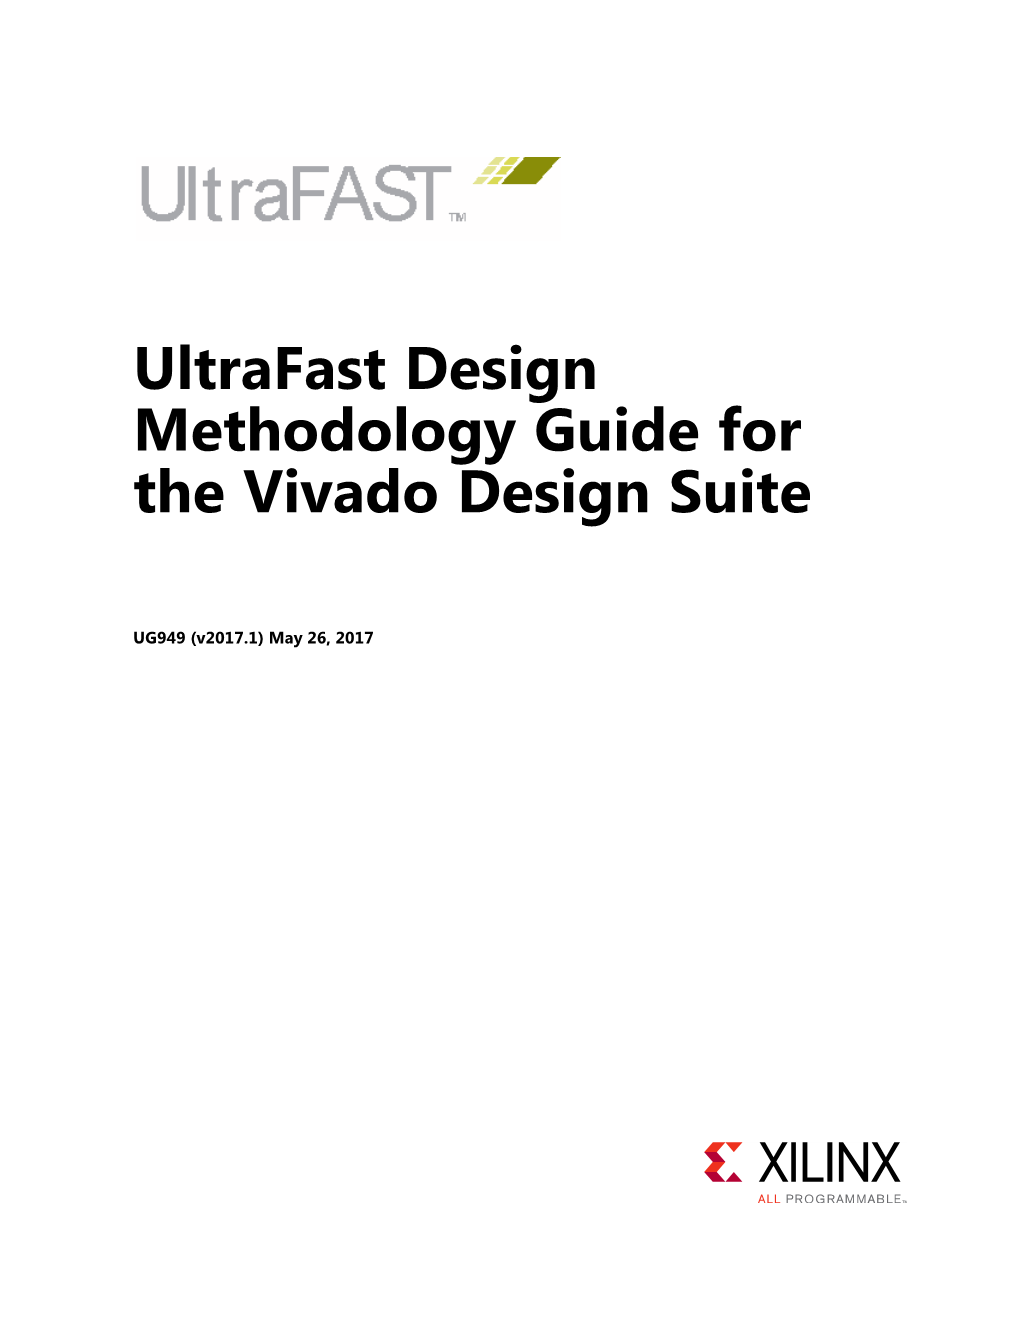 Ultrafast Design Methodology Guide for the Vivado Design Suite (UG949)